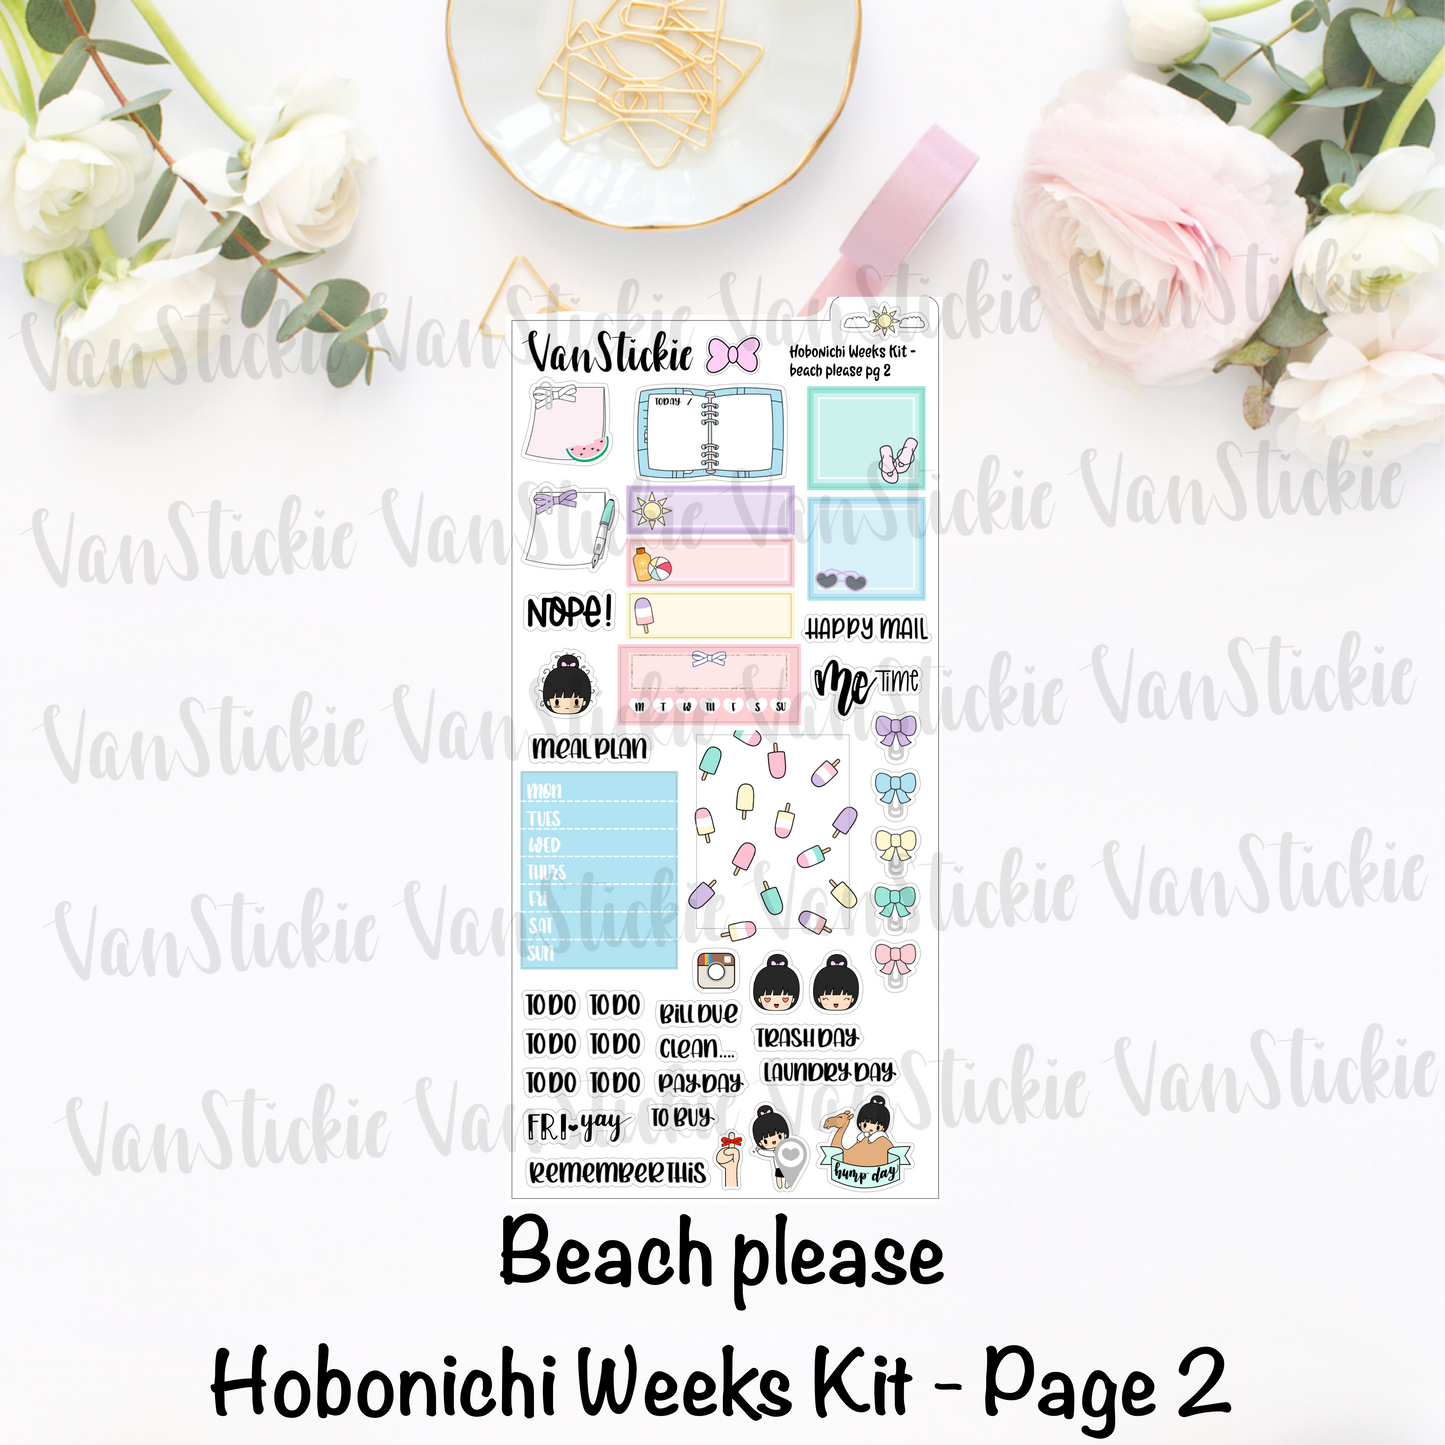 Hobonichi Weeks Kit - "Beach Please"